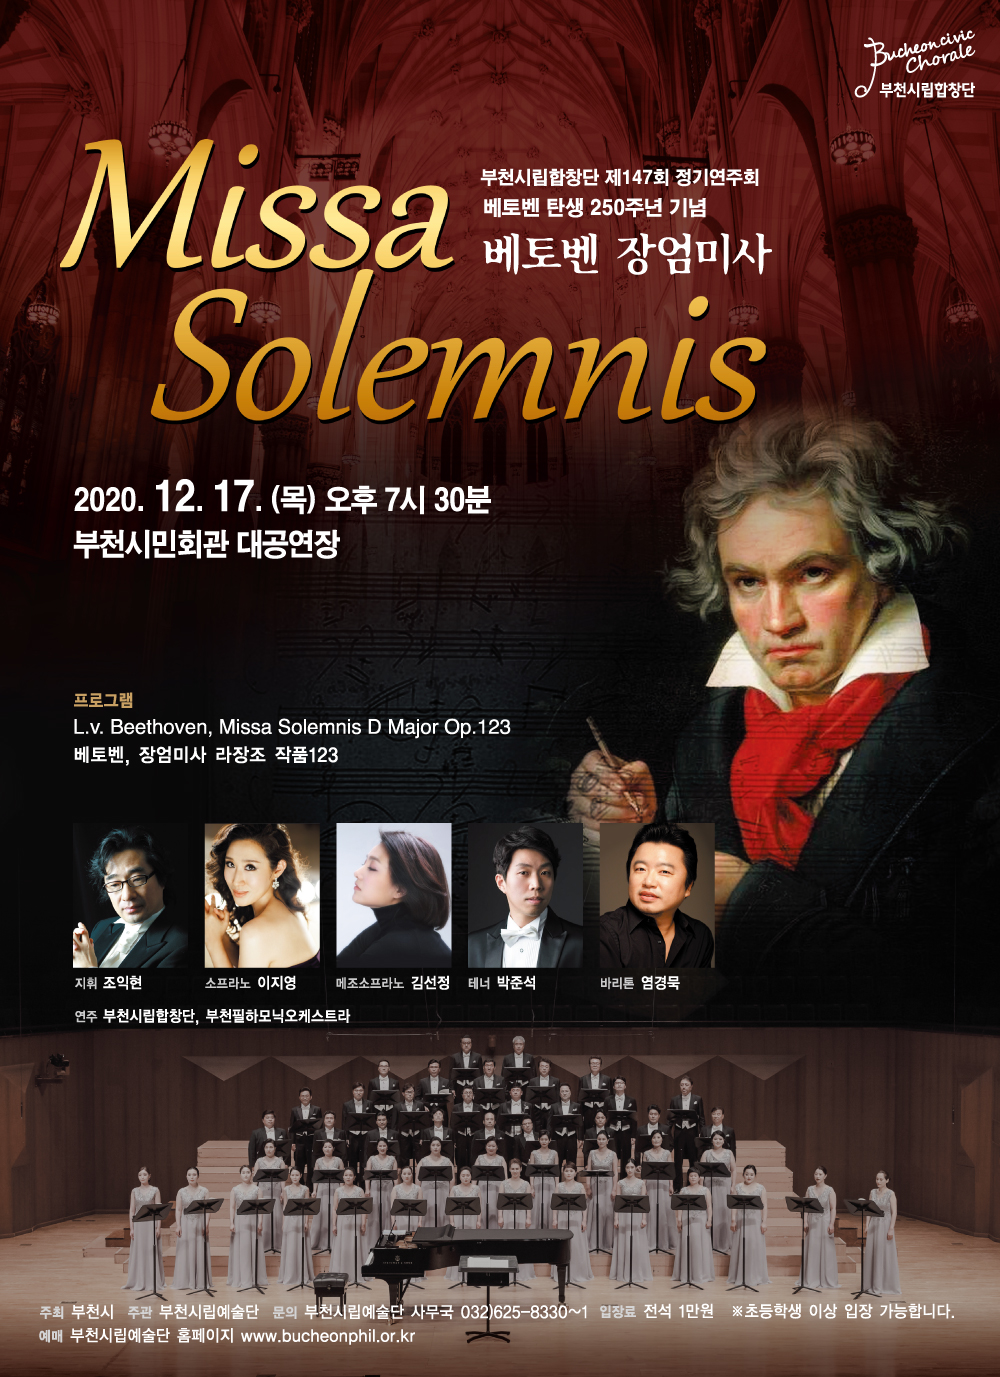 [12.17]부천시립합창단 제147회 정기연주회 - 베토벤 장엄미사 'Missa solemnis'